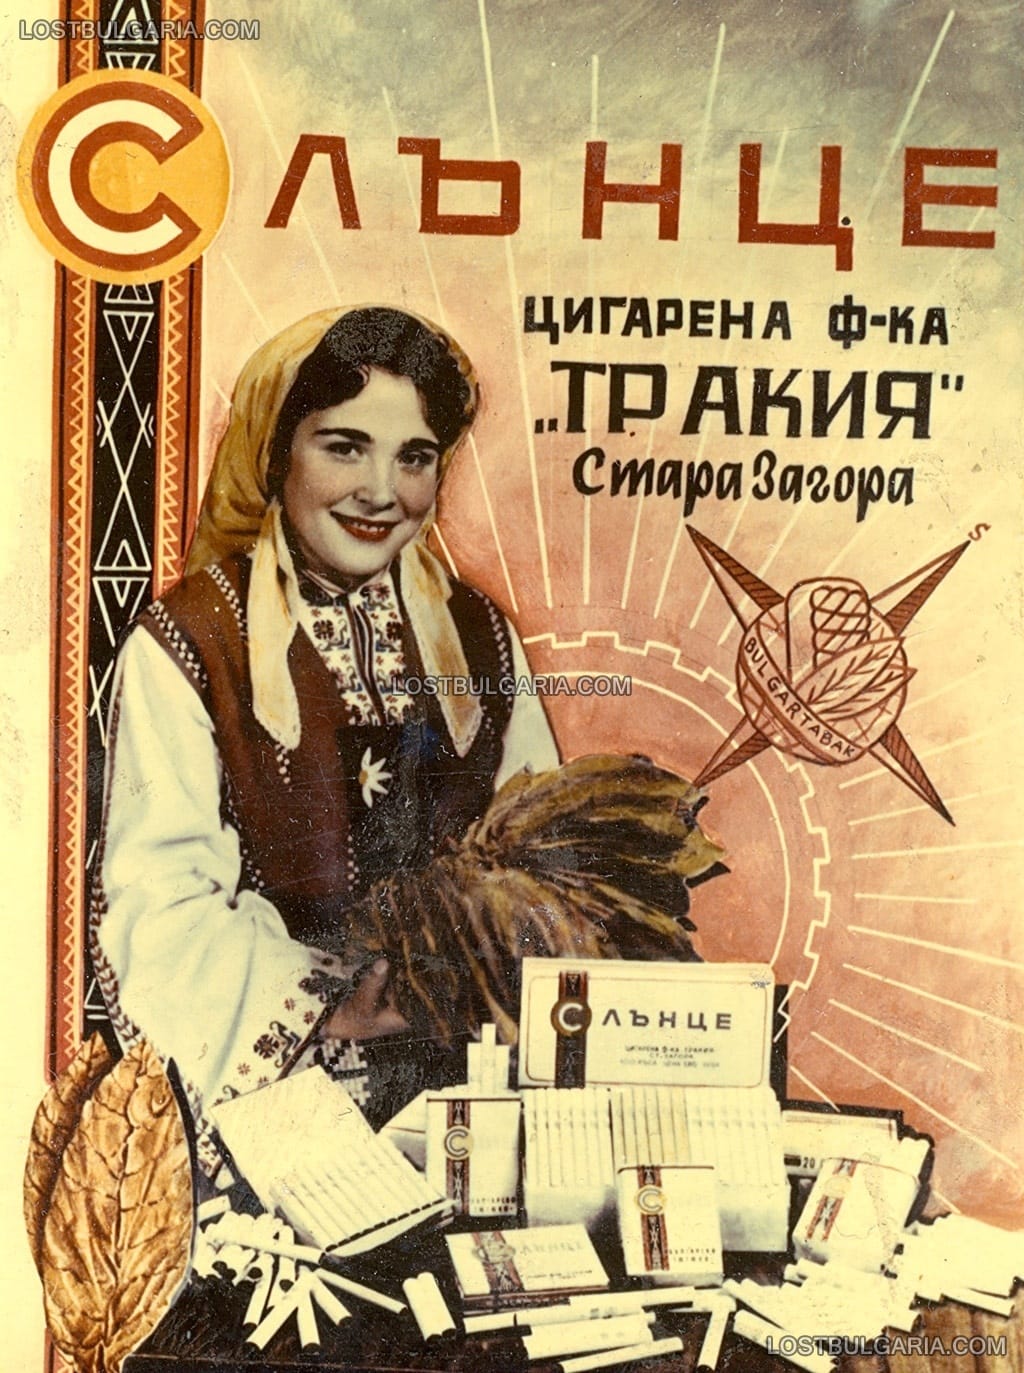 Рекламно календарче на цигари "Слънце", цигарена фабрика "Тракия", Стара Загора, 1964 г.